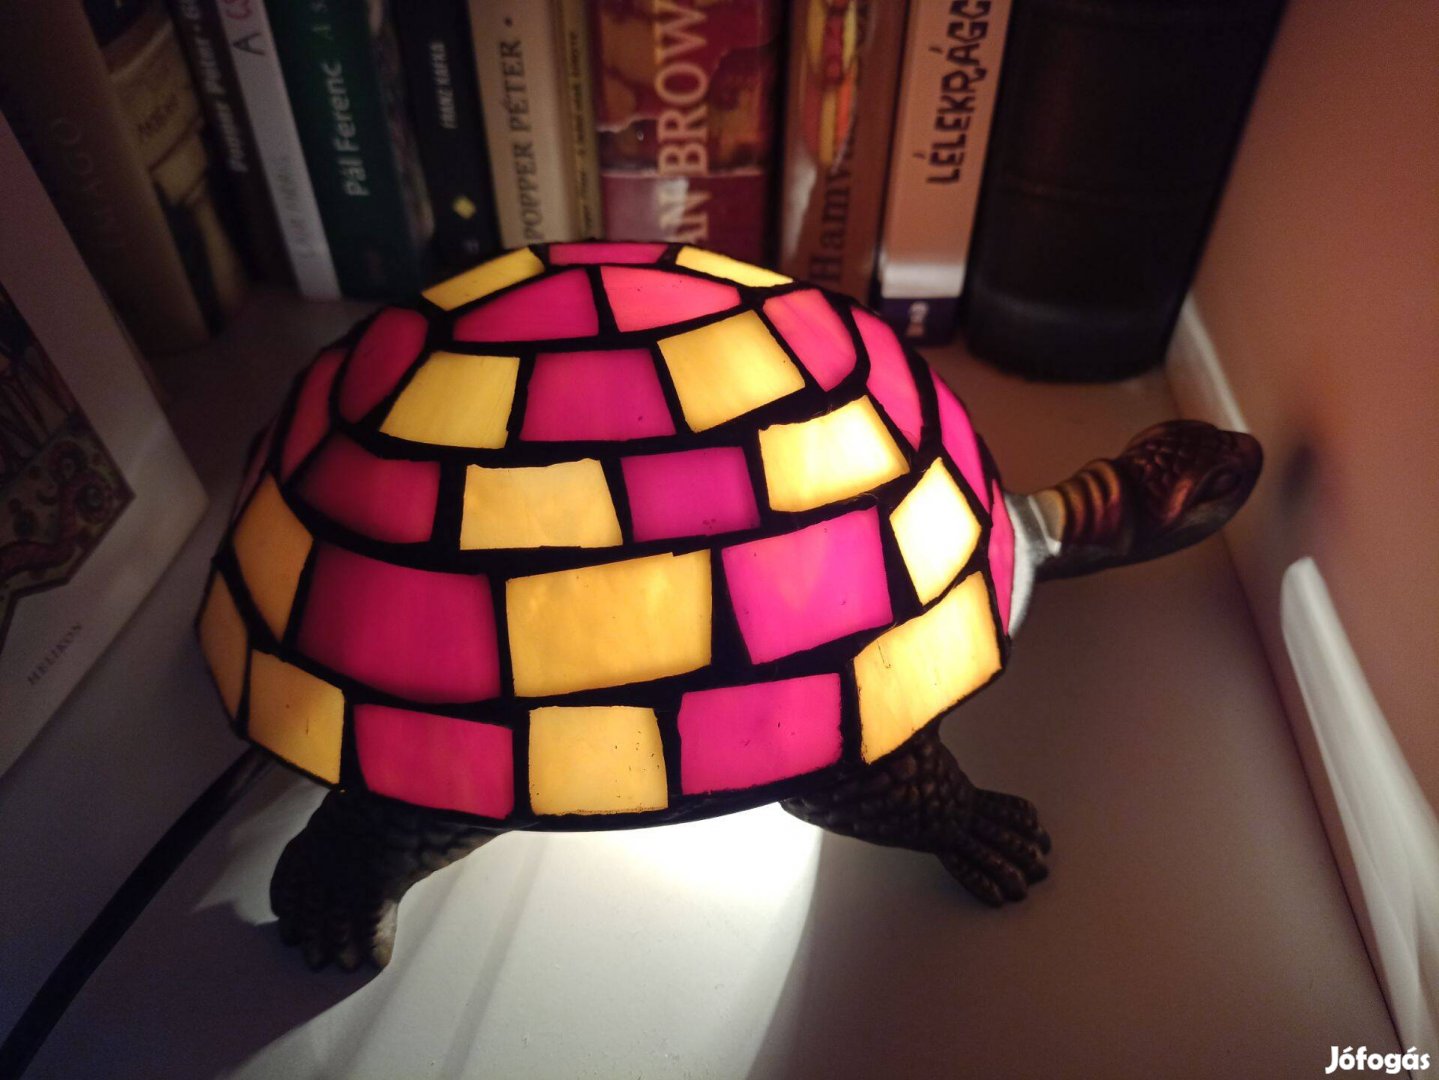 Tiffany típusú festett üvegű teknős lámpa